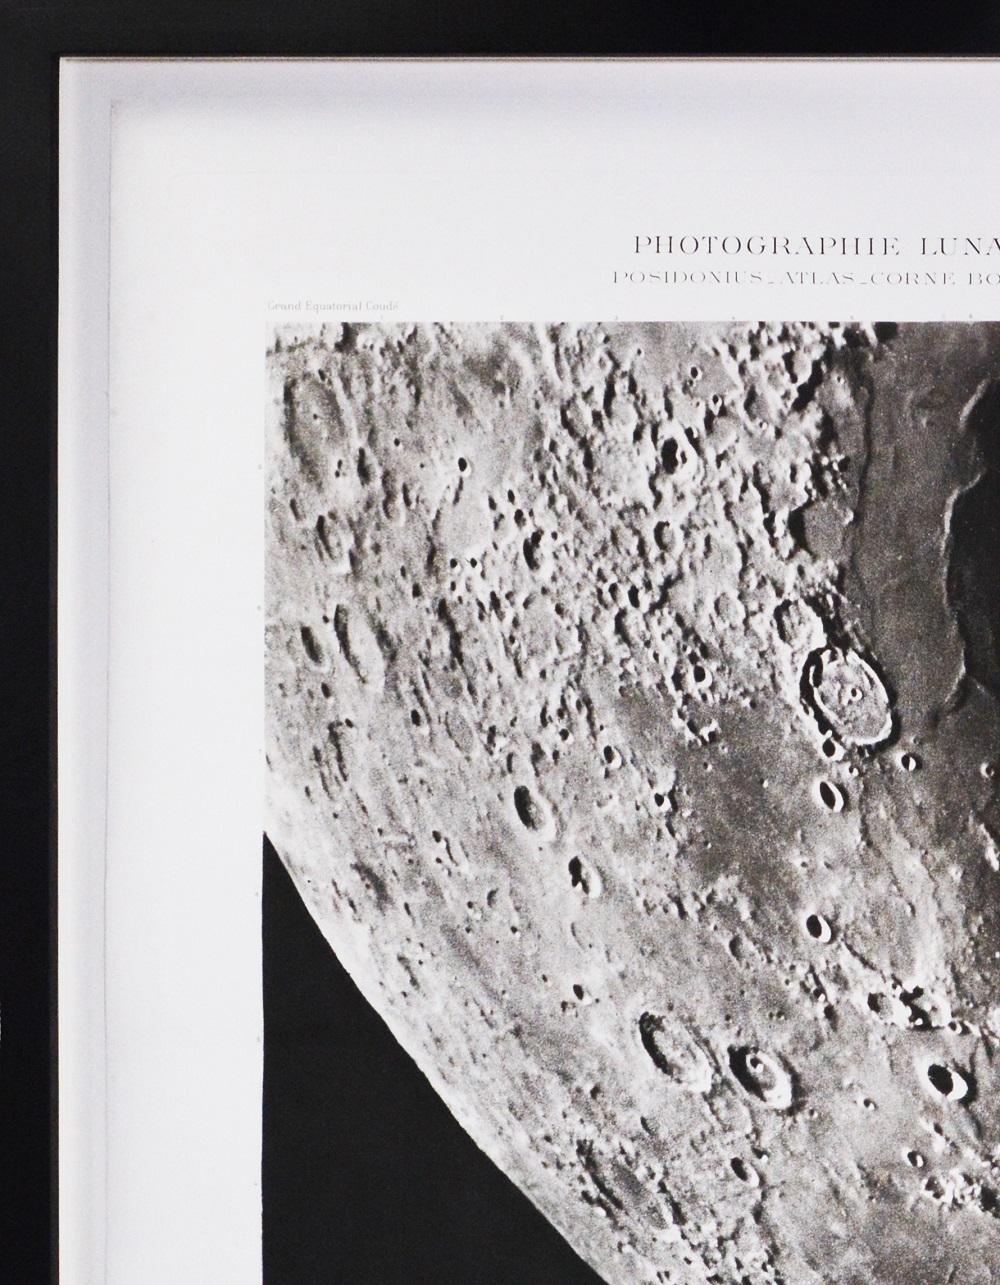 POSIDONIUS_ATLAS_CORNE BORÉALE.  - Héliogravure of the Moon's Surface - Photograph by Moritz Loewy; Pierre-Henry Puiseux